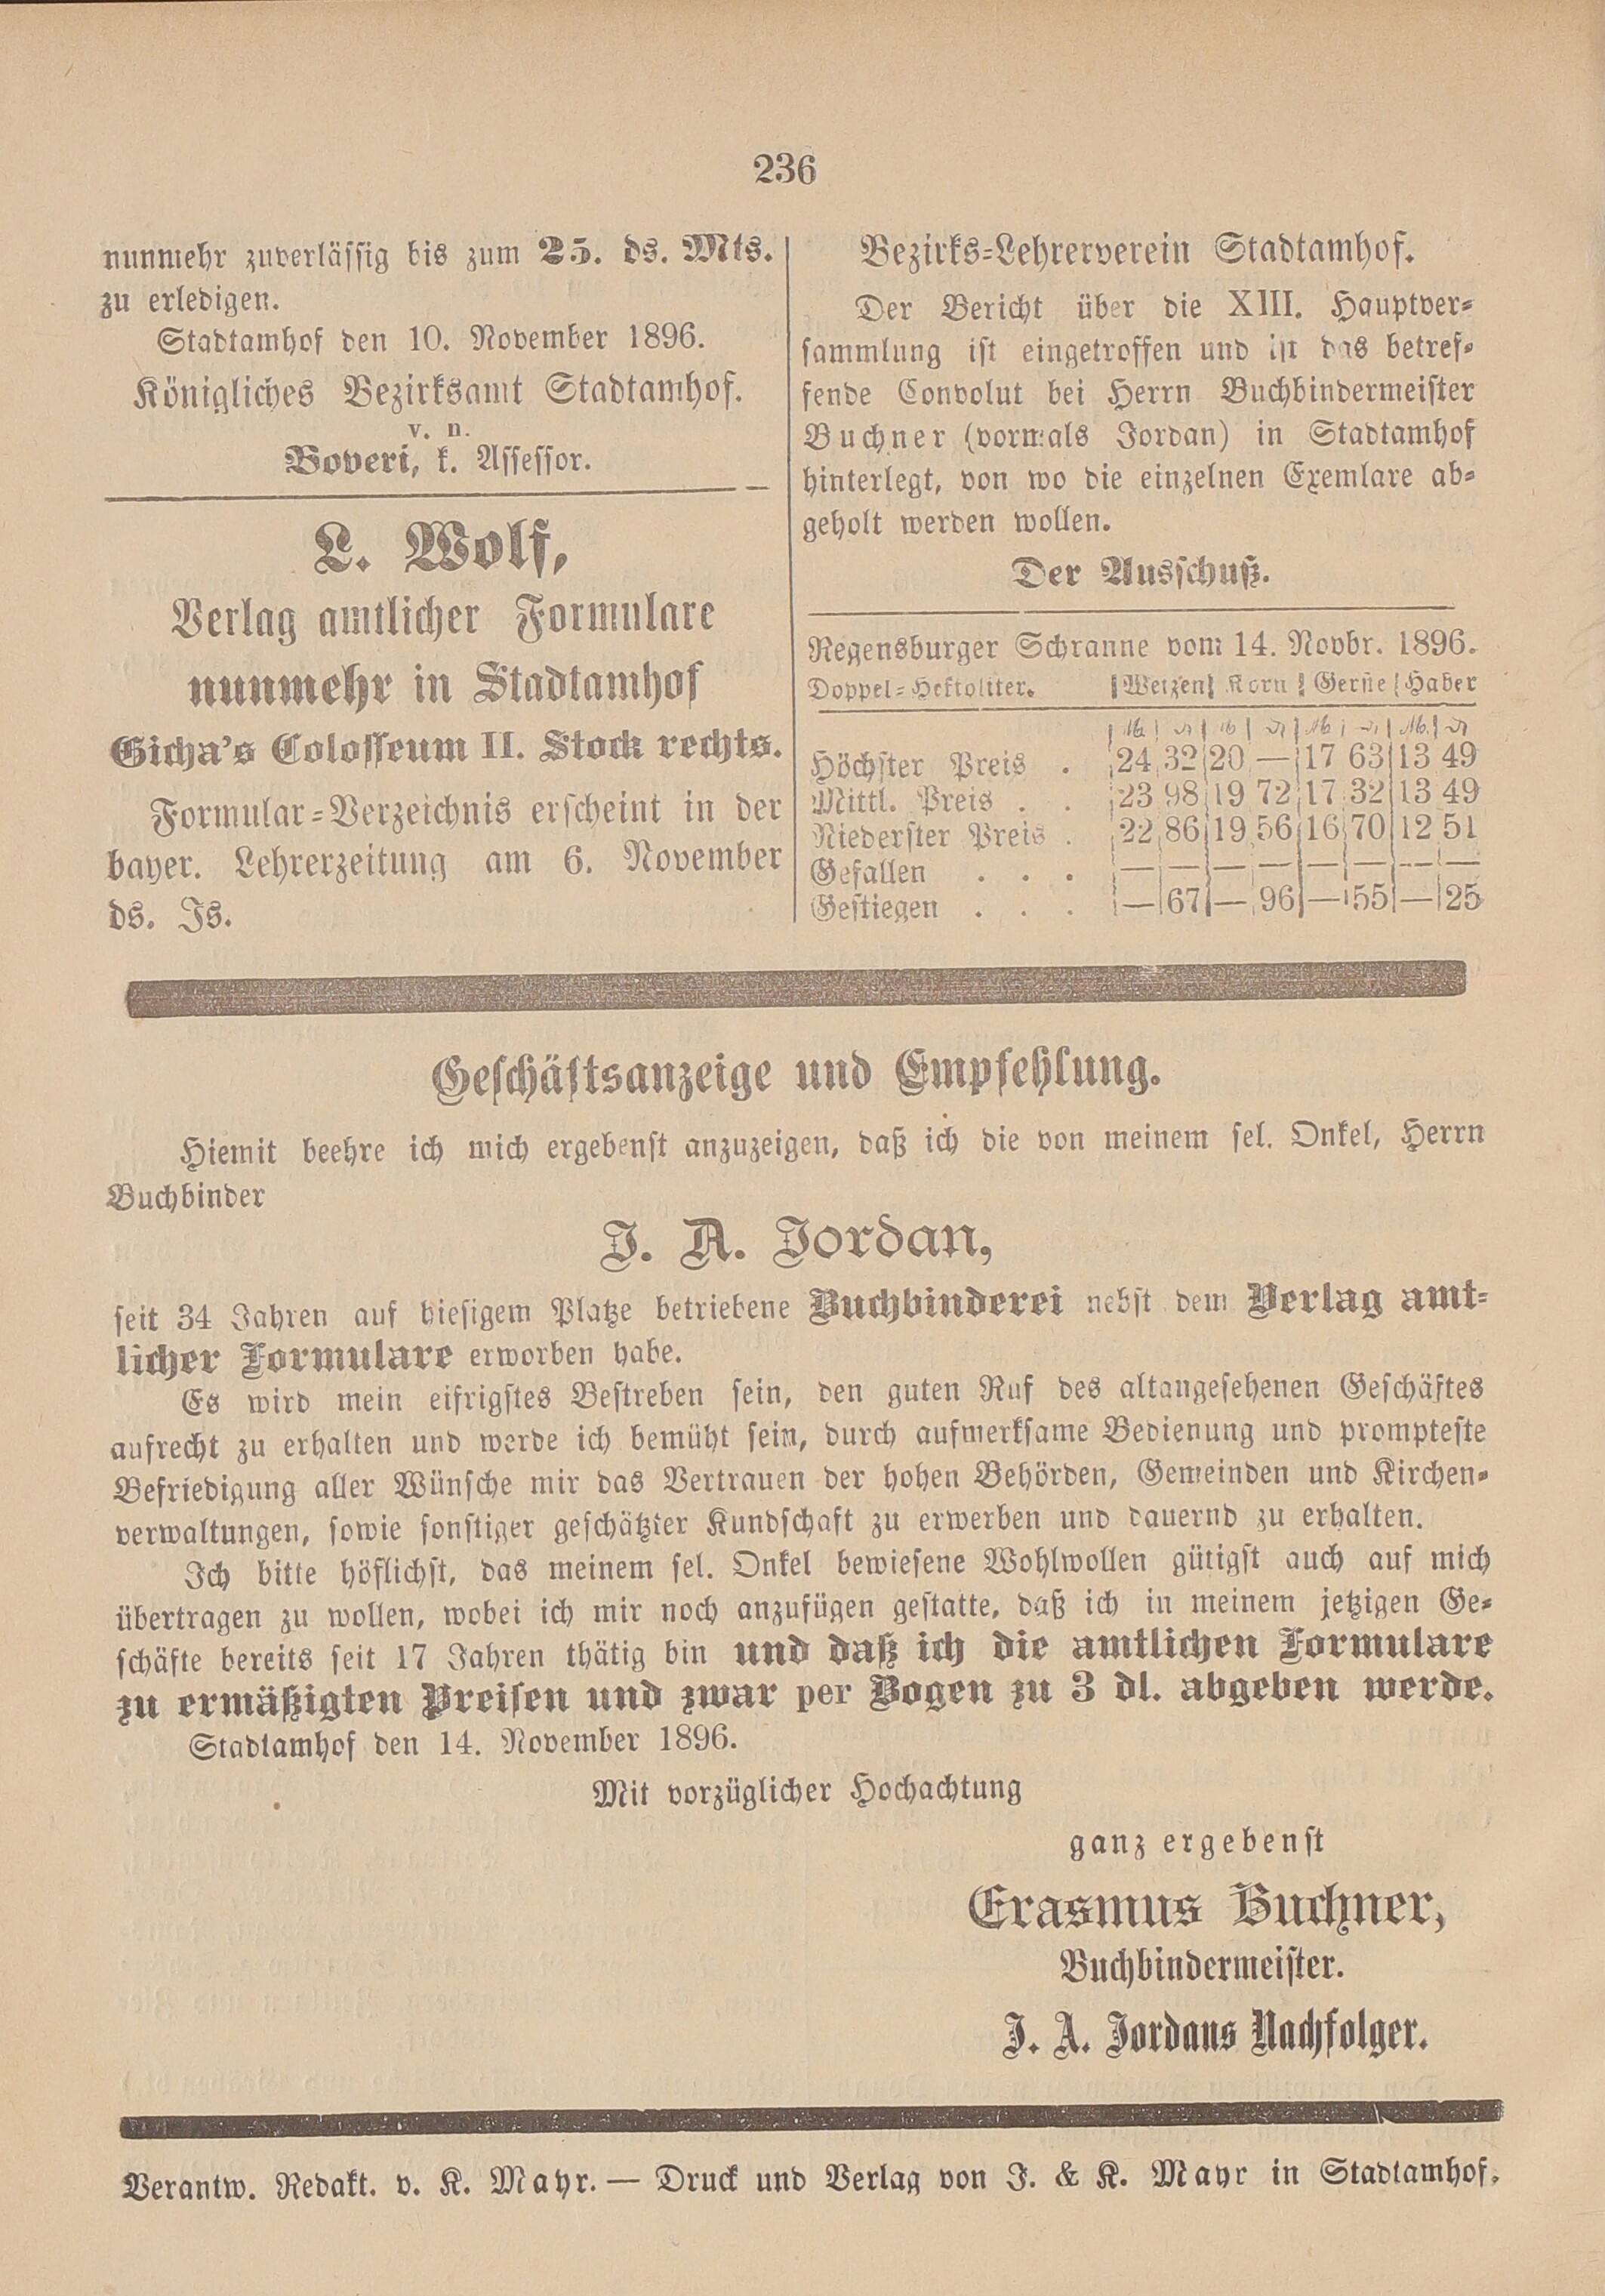 4. amtsblatt-stadtamhof-regensburg-1896-11-15-n46_2470